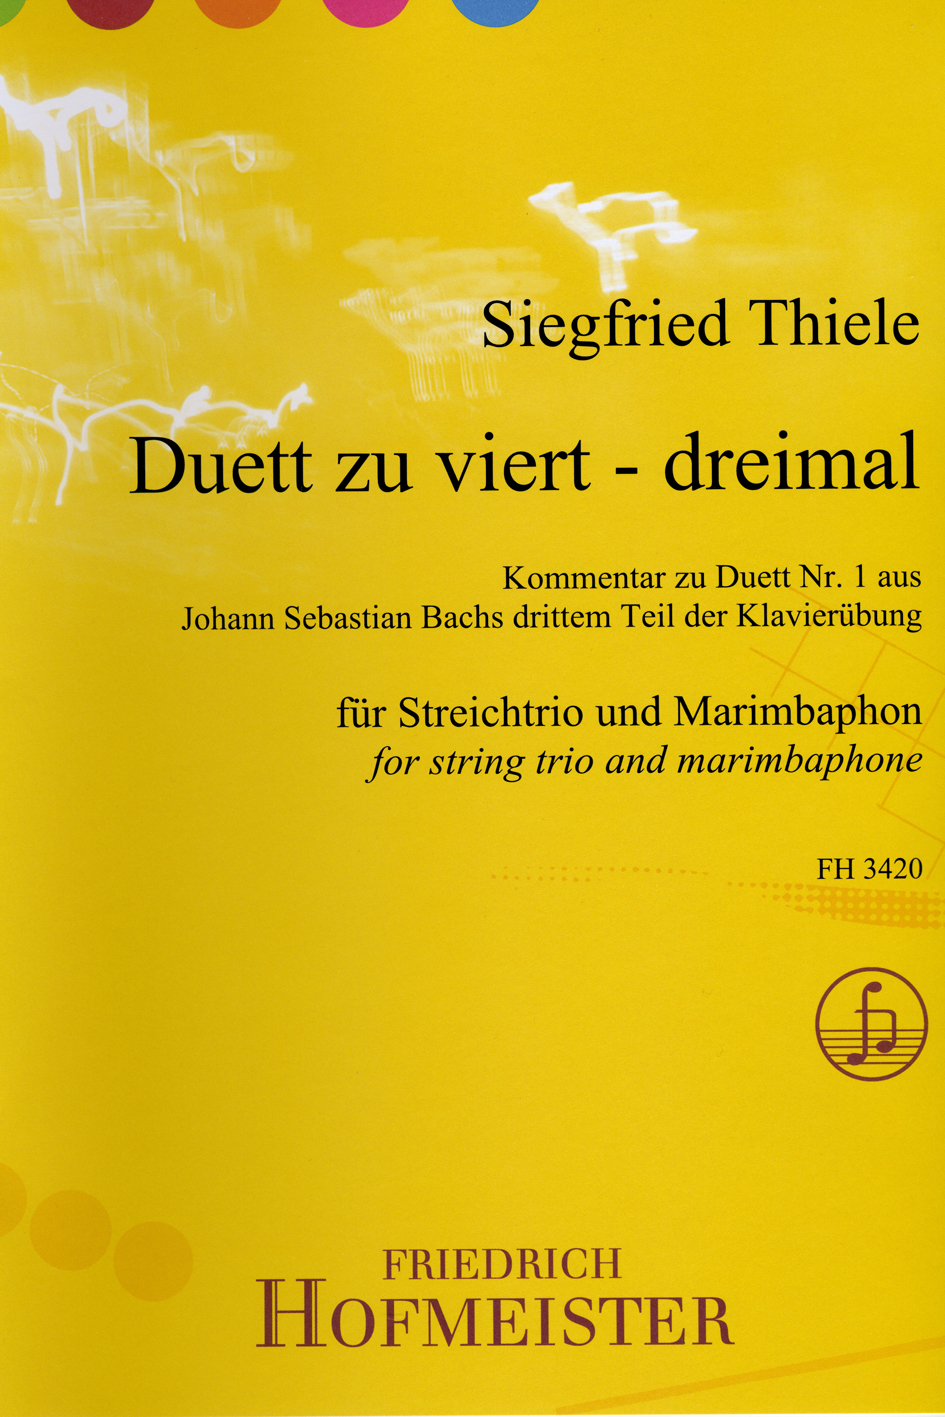 siegfried-thiele-duett-zu-viert-dreimal-vl-va-vc-m_0002.JPG